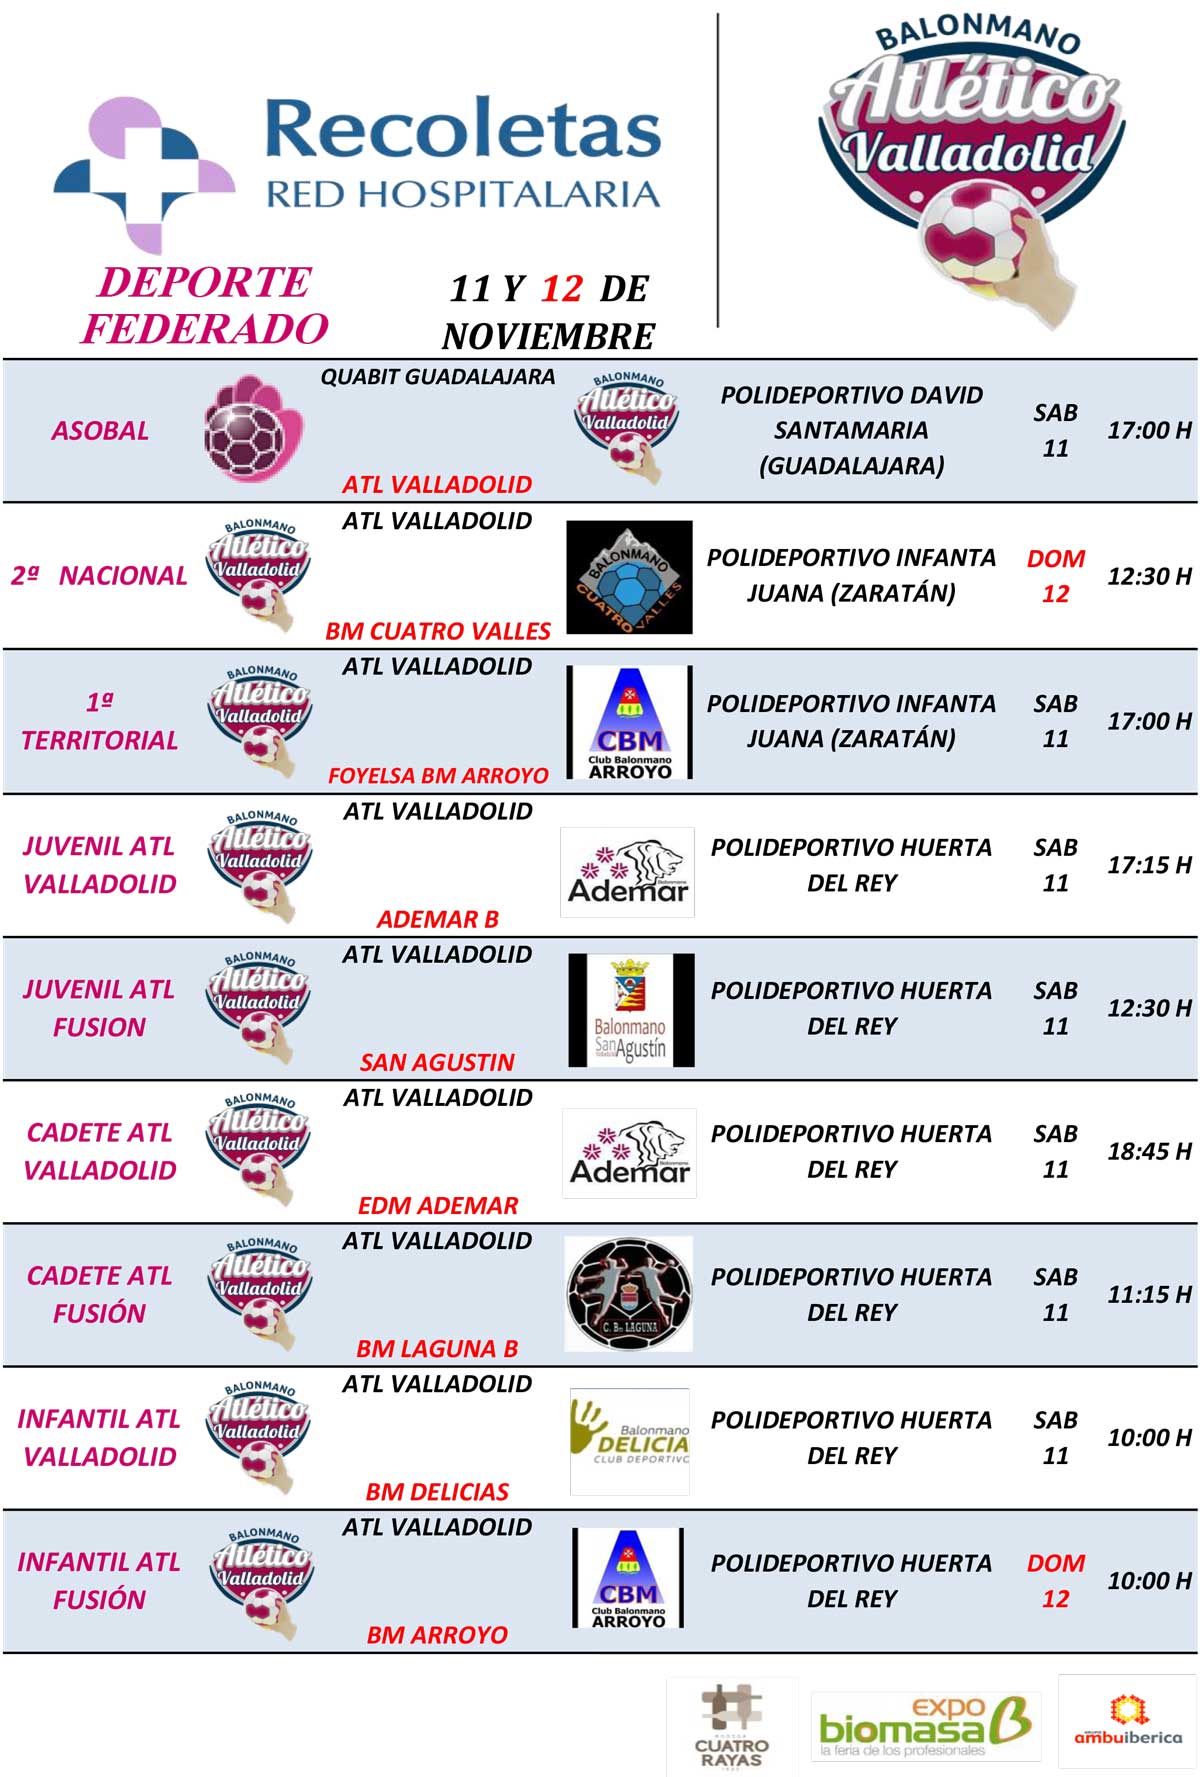 Partidos de cantera del Recoletas Atlético Valladolid (jornada 11 y 12 noviembre) | Galería 2 / 2